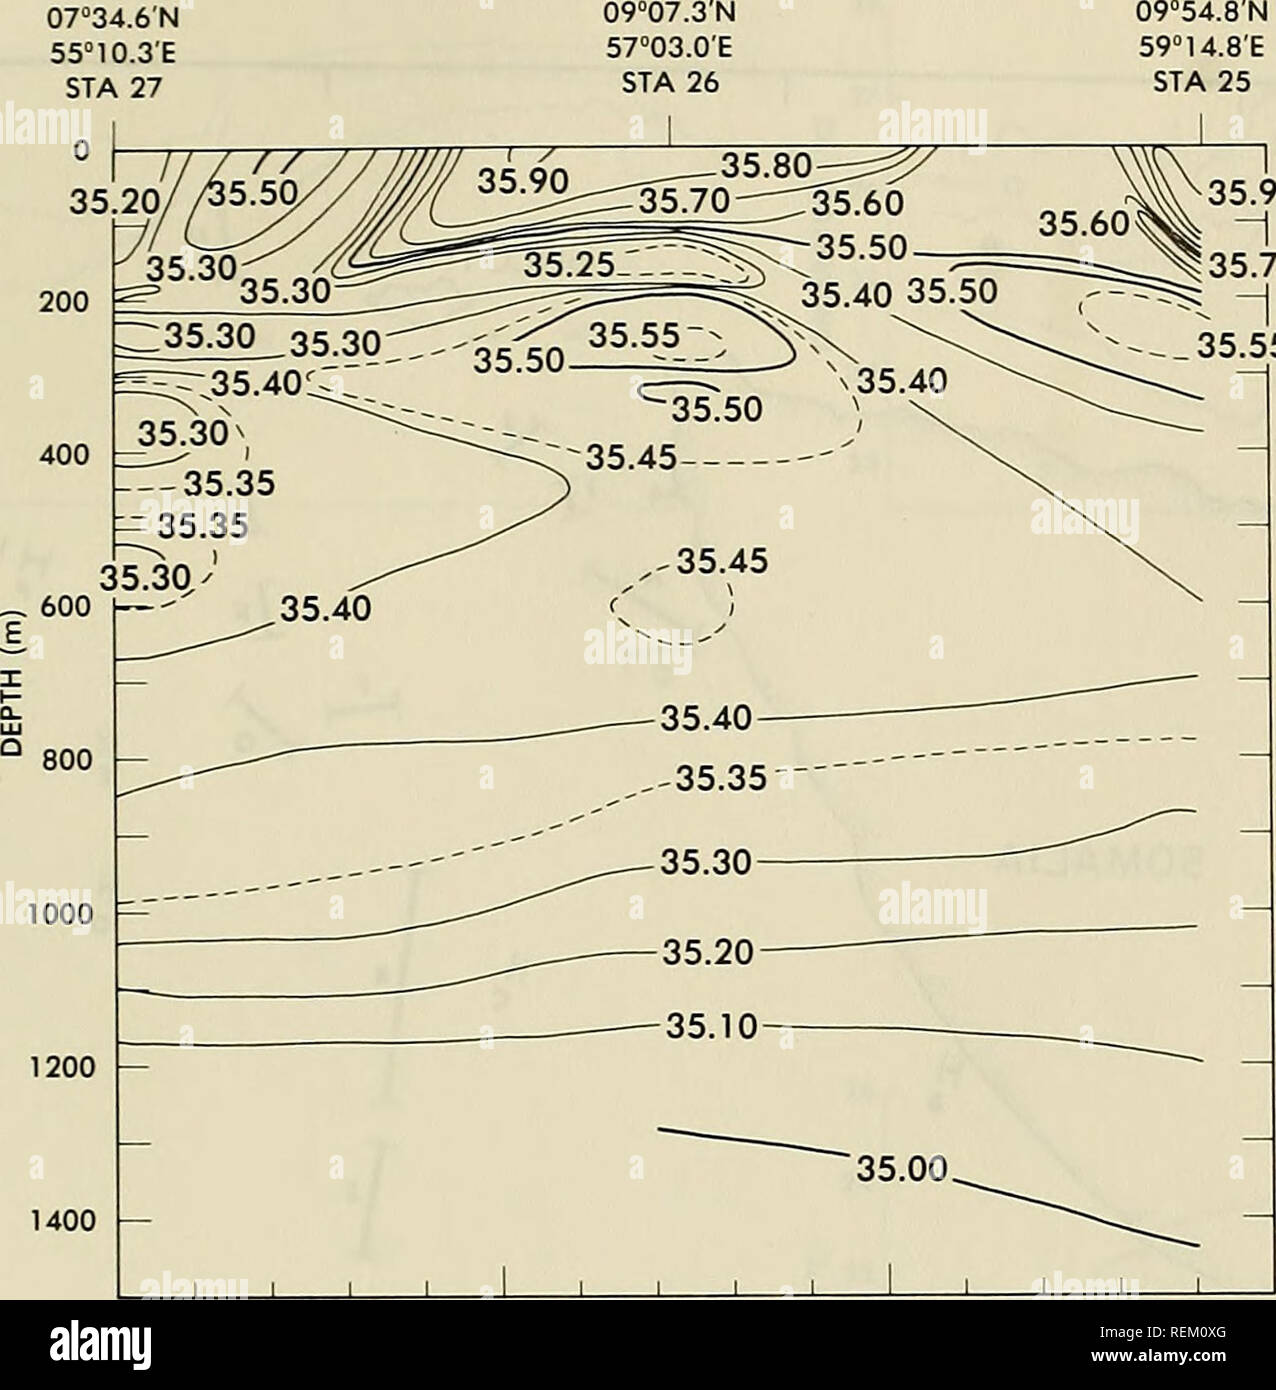 . La circulation et les propriétés océanographiques dans le bassin somalien comme pendant la mousson du sud-ouest 1979. Courants océaniques ; océanographie ; les moussons. 35,90 35,60^S^ -|   ^ ^,35,70 35,40 35,50 T^^^^ ? :^ ^ 200 35,55 35. 400. 100 200 DISTANCE (NMI) Figure 47. Salinité (VOO) le long de l'article 9, l'USNS WILKES, 31 août - 2 septembre 1979 71. Veuillez noter que ces images sont extraites de la page numérisée des images qui peuvent avoir été retouchées numériquement pour plus de lisibilité - coloration et l'aspect de ces illustrations ne peut pas parfaitement ressembler à l'œuvre originale.. Beatty, William H ; Bruce, John G ; Guthrie, R Banque D'Images